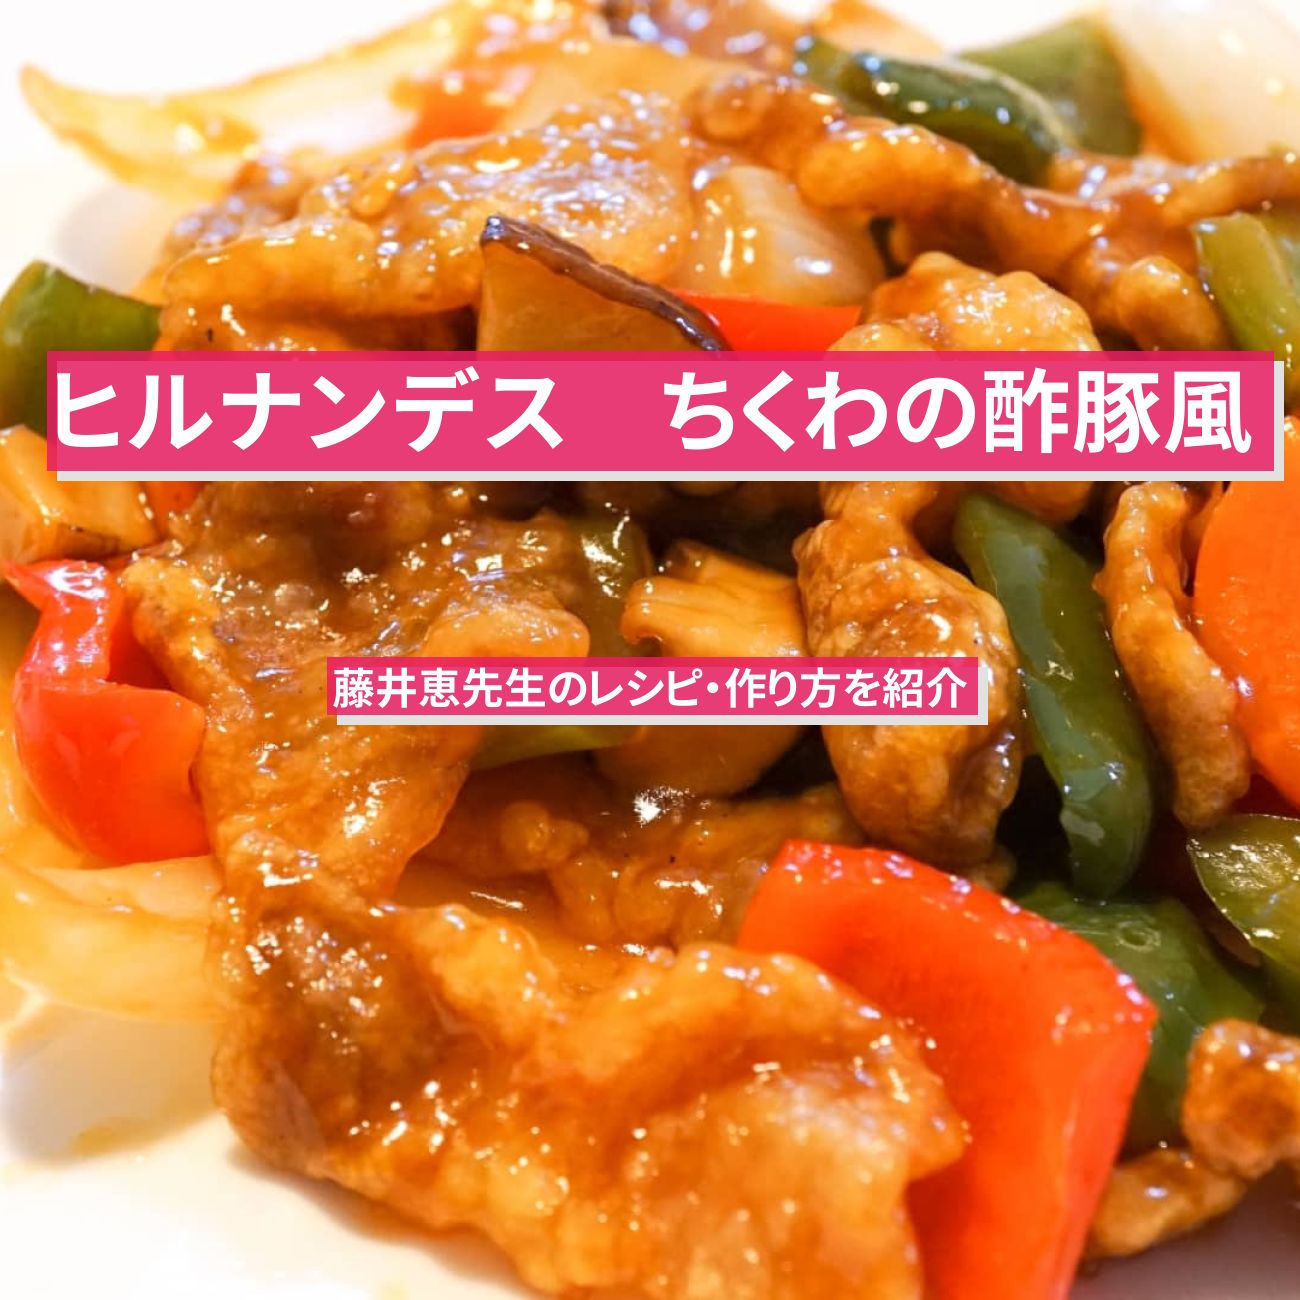 【ヒルナンデス】酢ちくわ『ちくわの酢豚風』藤井恵先生のレシピ・作り方を紹介